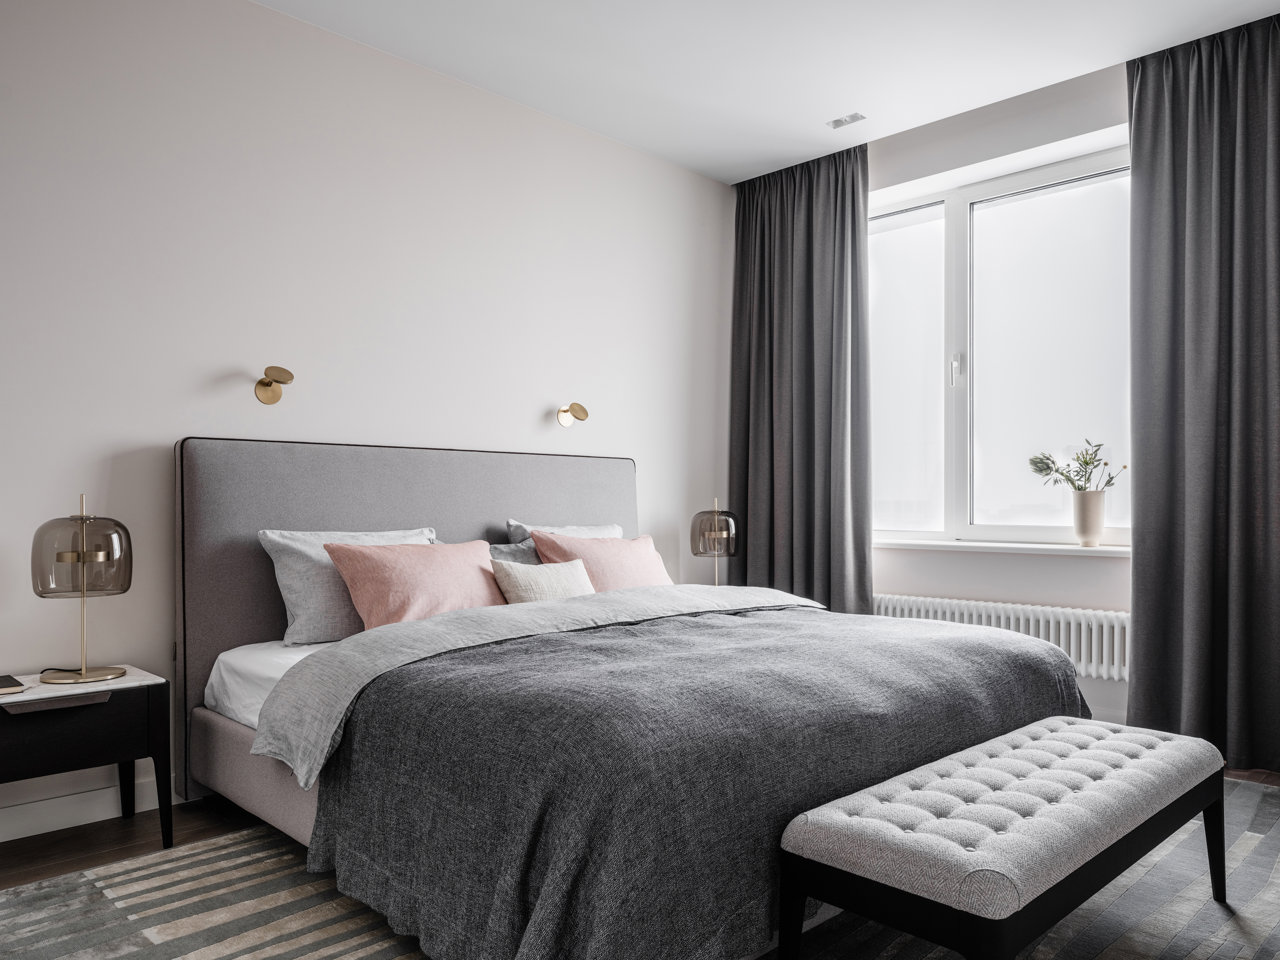 El detalle de unos cojines en tonos rosados rompe el monocromatismo gris del dormitorio principal y aporta un guiño más cálido.